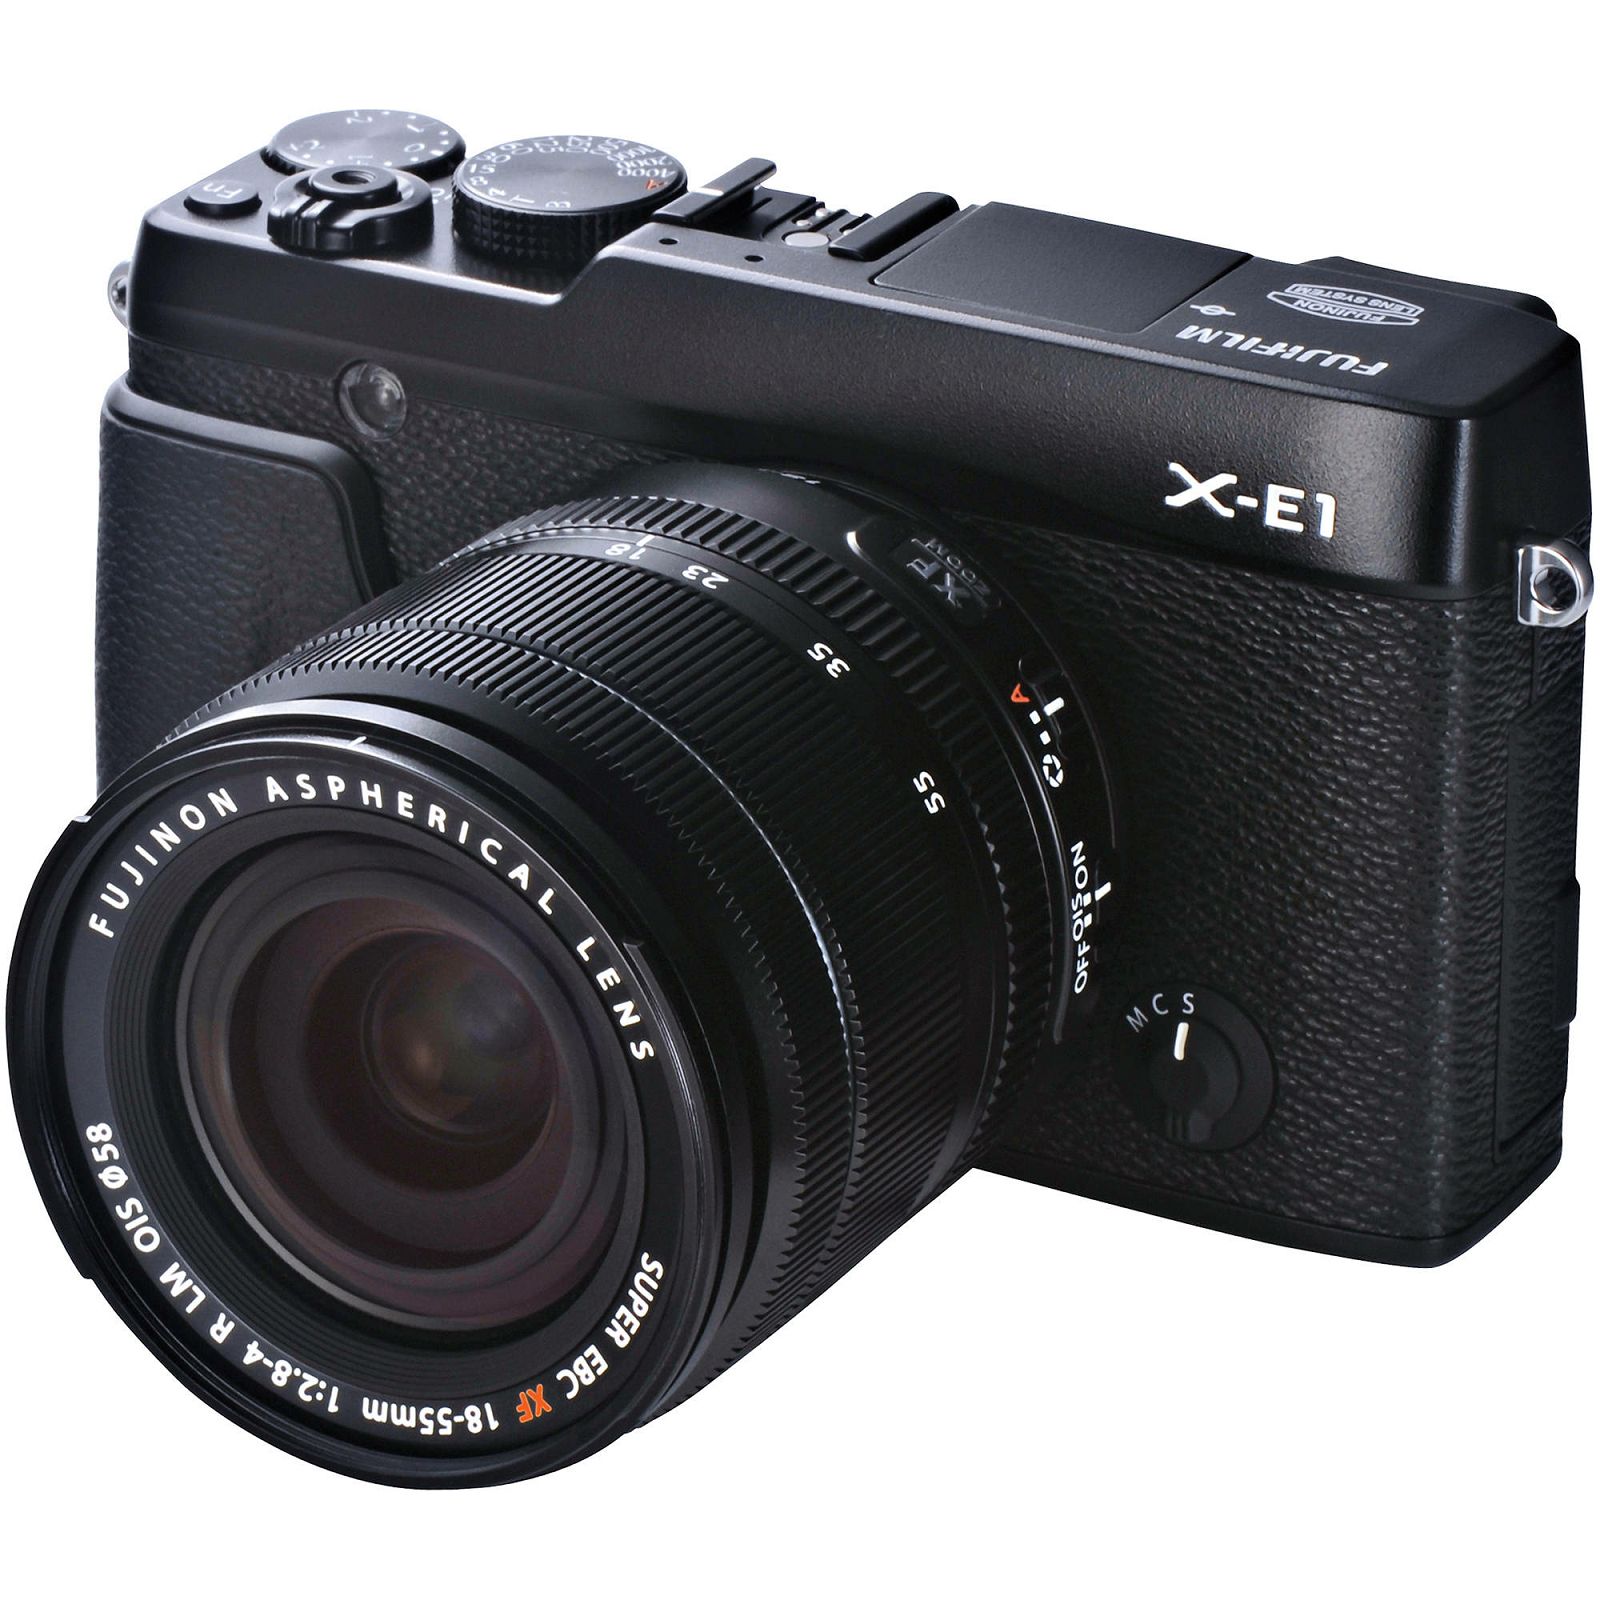 Fuji Finepix X-E1 + 18-55 f2.8-4.0 OIS KIT BLACK Fujifilm Digital Camera Kit fotoaparat + objektiv XF 18-55mm f/2.8-4 Lens (Black)